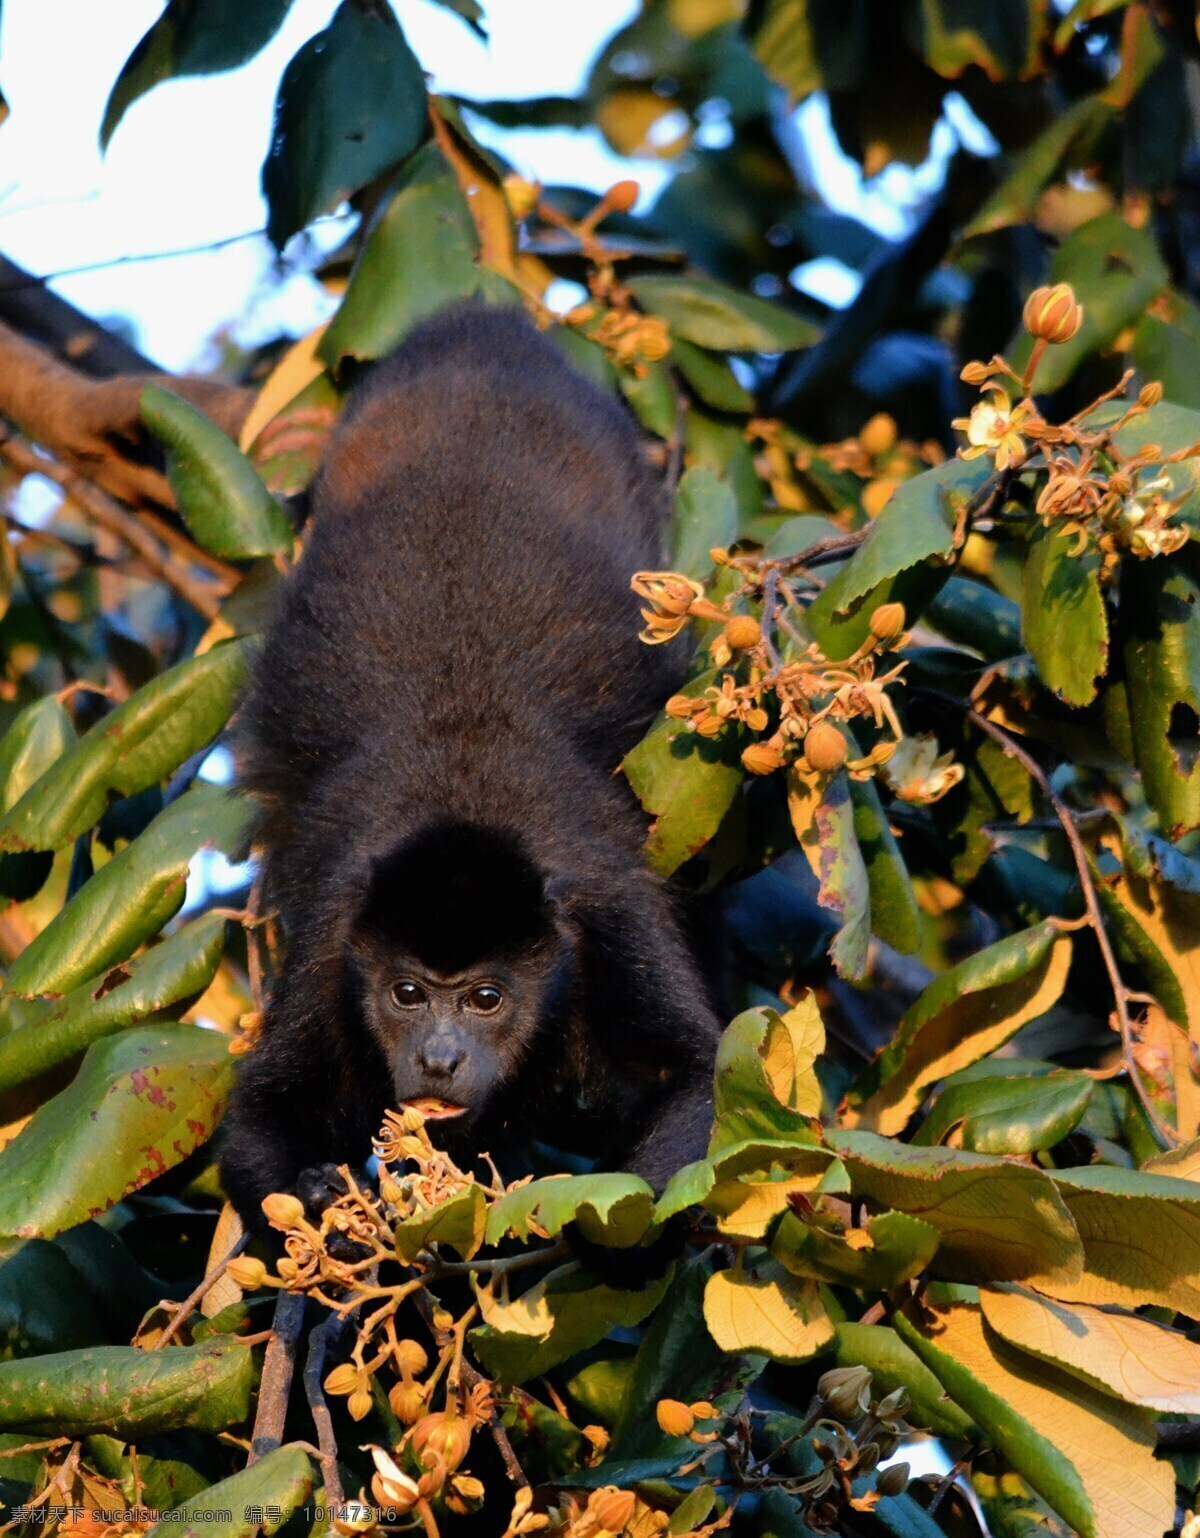 猴子 猿猴 小猿猴 野生猿猴 野生猴子 野生 灵长目 小猴 哺乳动物 树叶 树木 动物 生物世界 野生动物 保护动物 珍稀动物 国家保护 频临灭绝